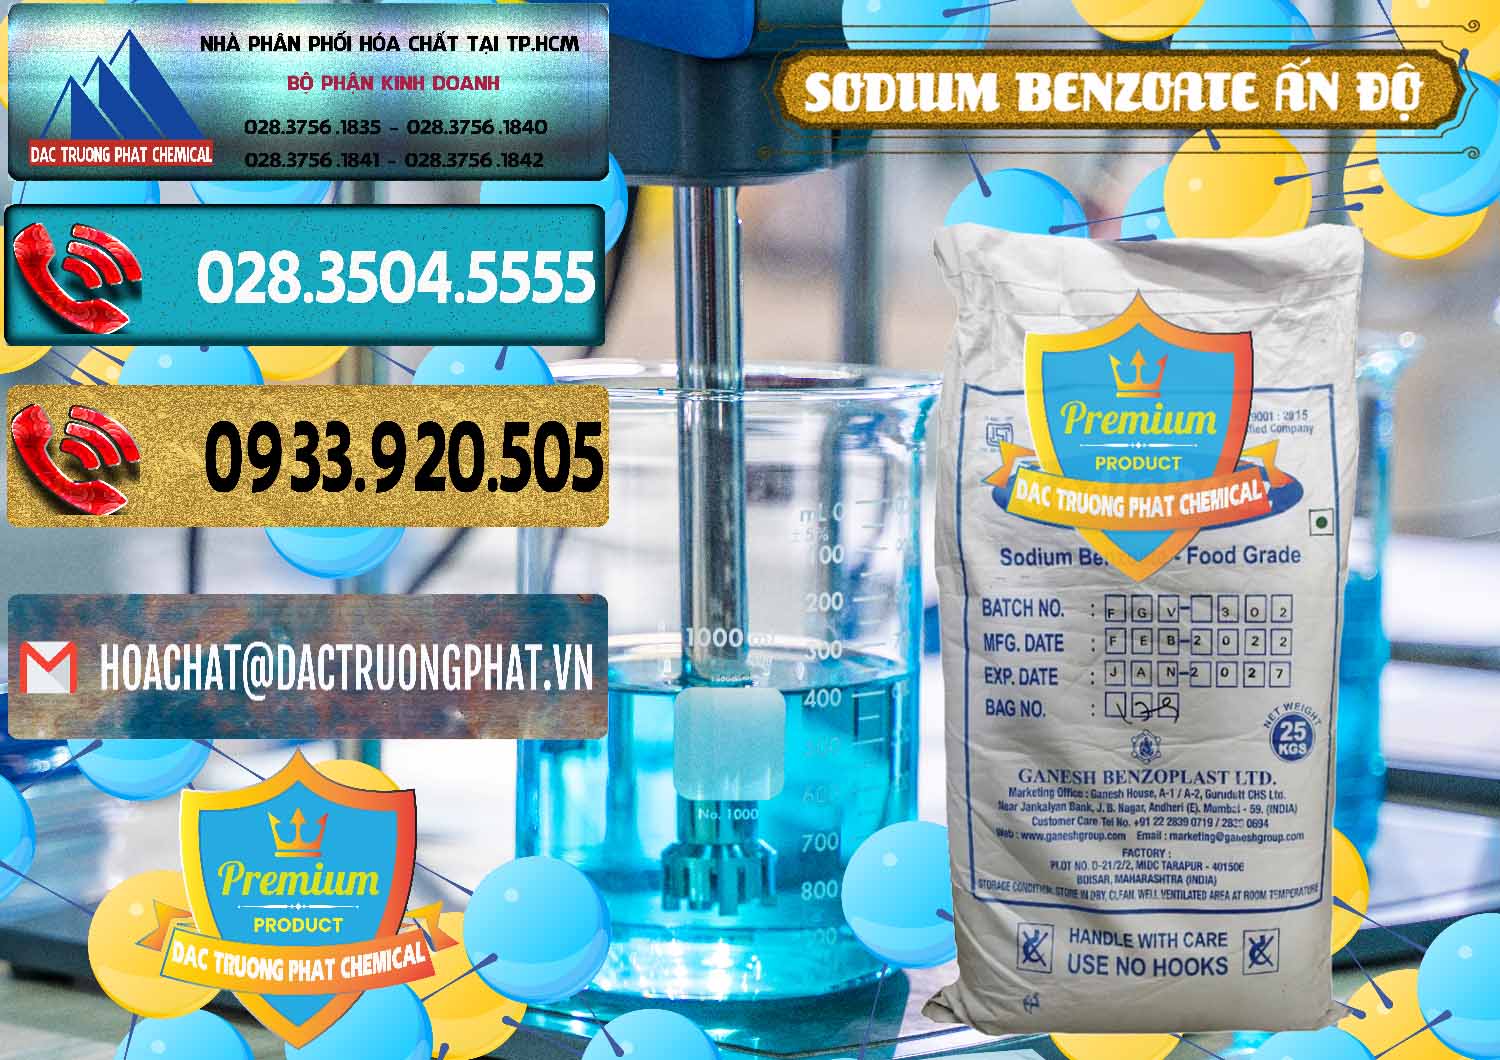 Nhà nhập khẩu và bán Sodium Benzoate - Mốc Bột Ấn Độ India - 0361 - Đơn vị phân phối & cung cấp hóa chất tại TP.HCM - hoachatdetnhuom.com